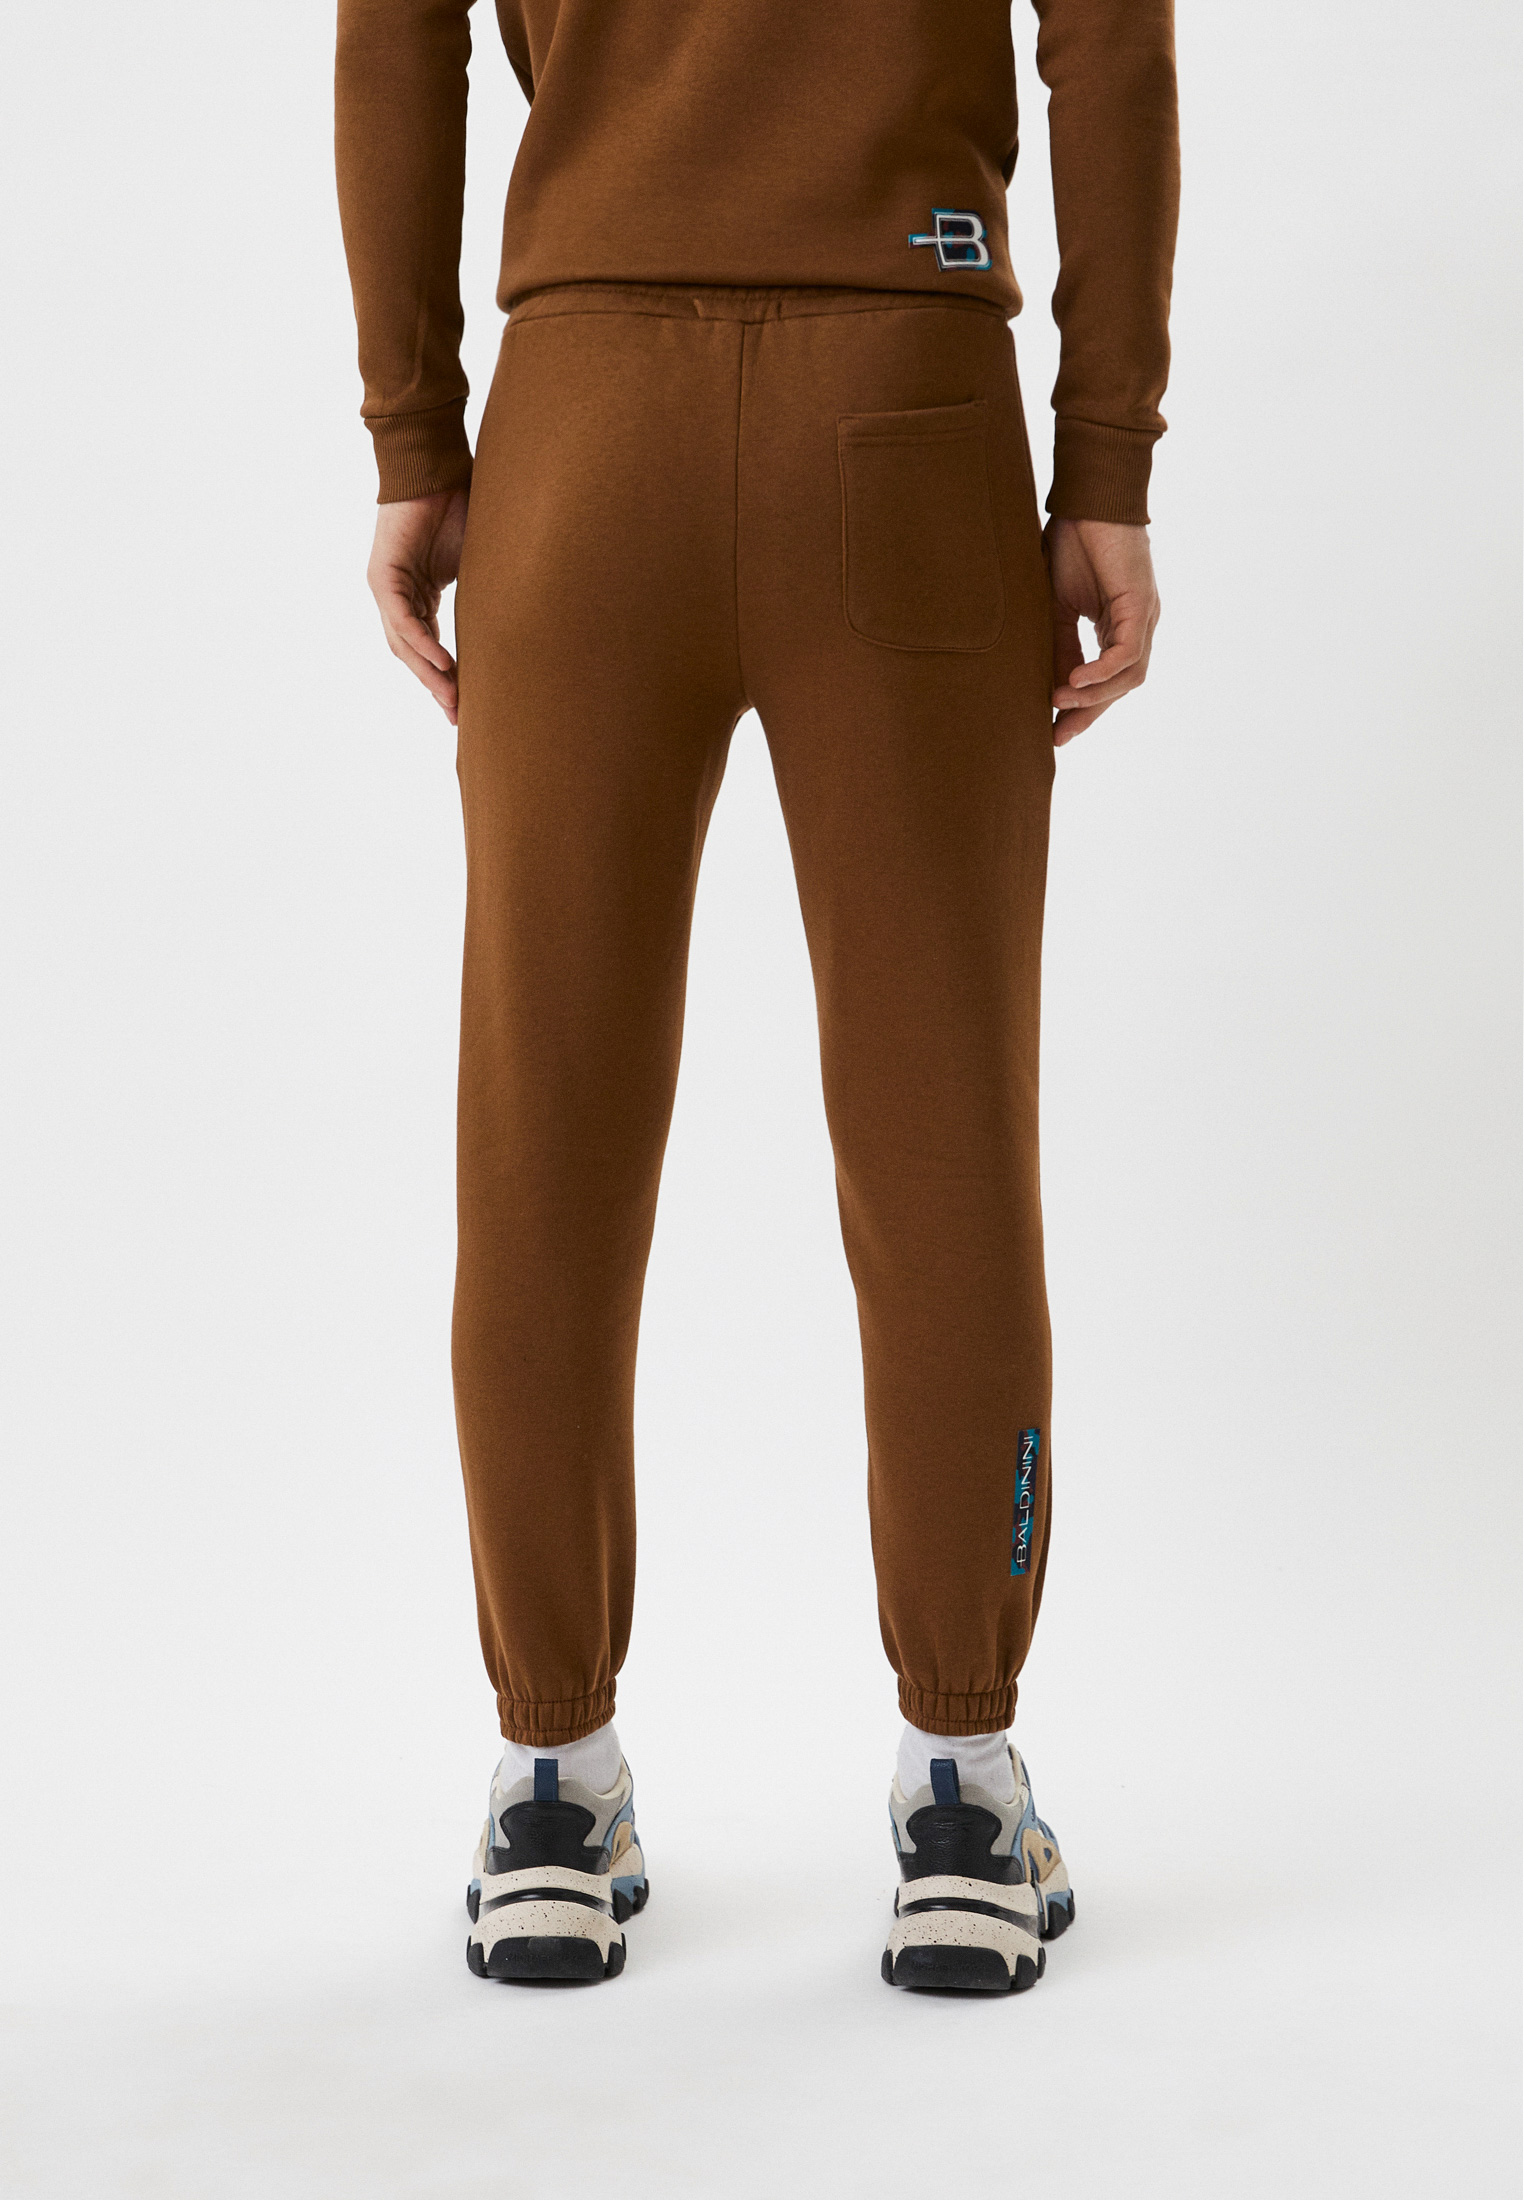 Мужские спортивные брюки Baldinini (Балдинини) BDO-M018: изображение 3